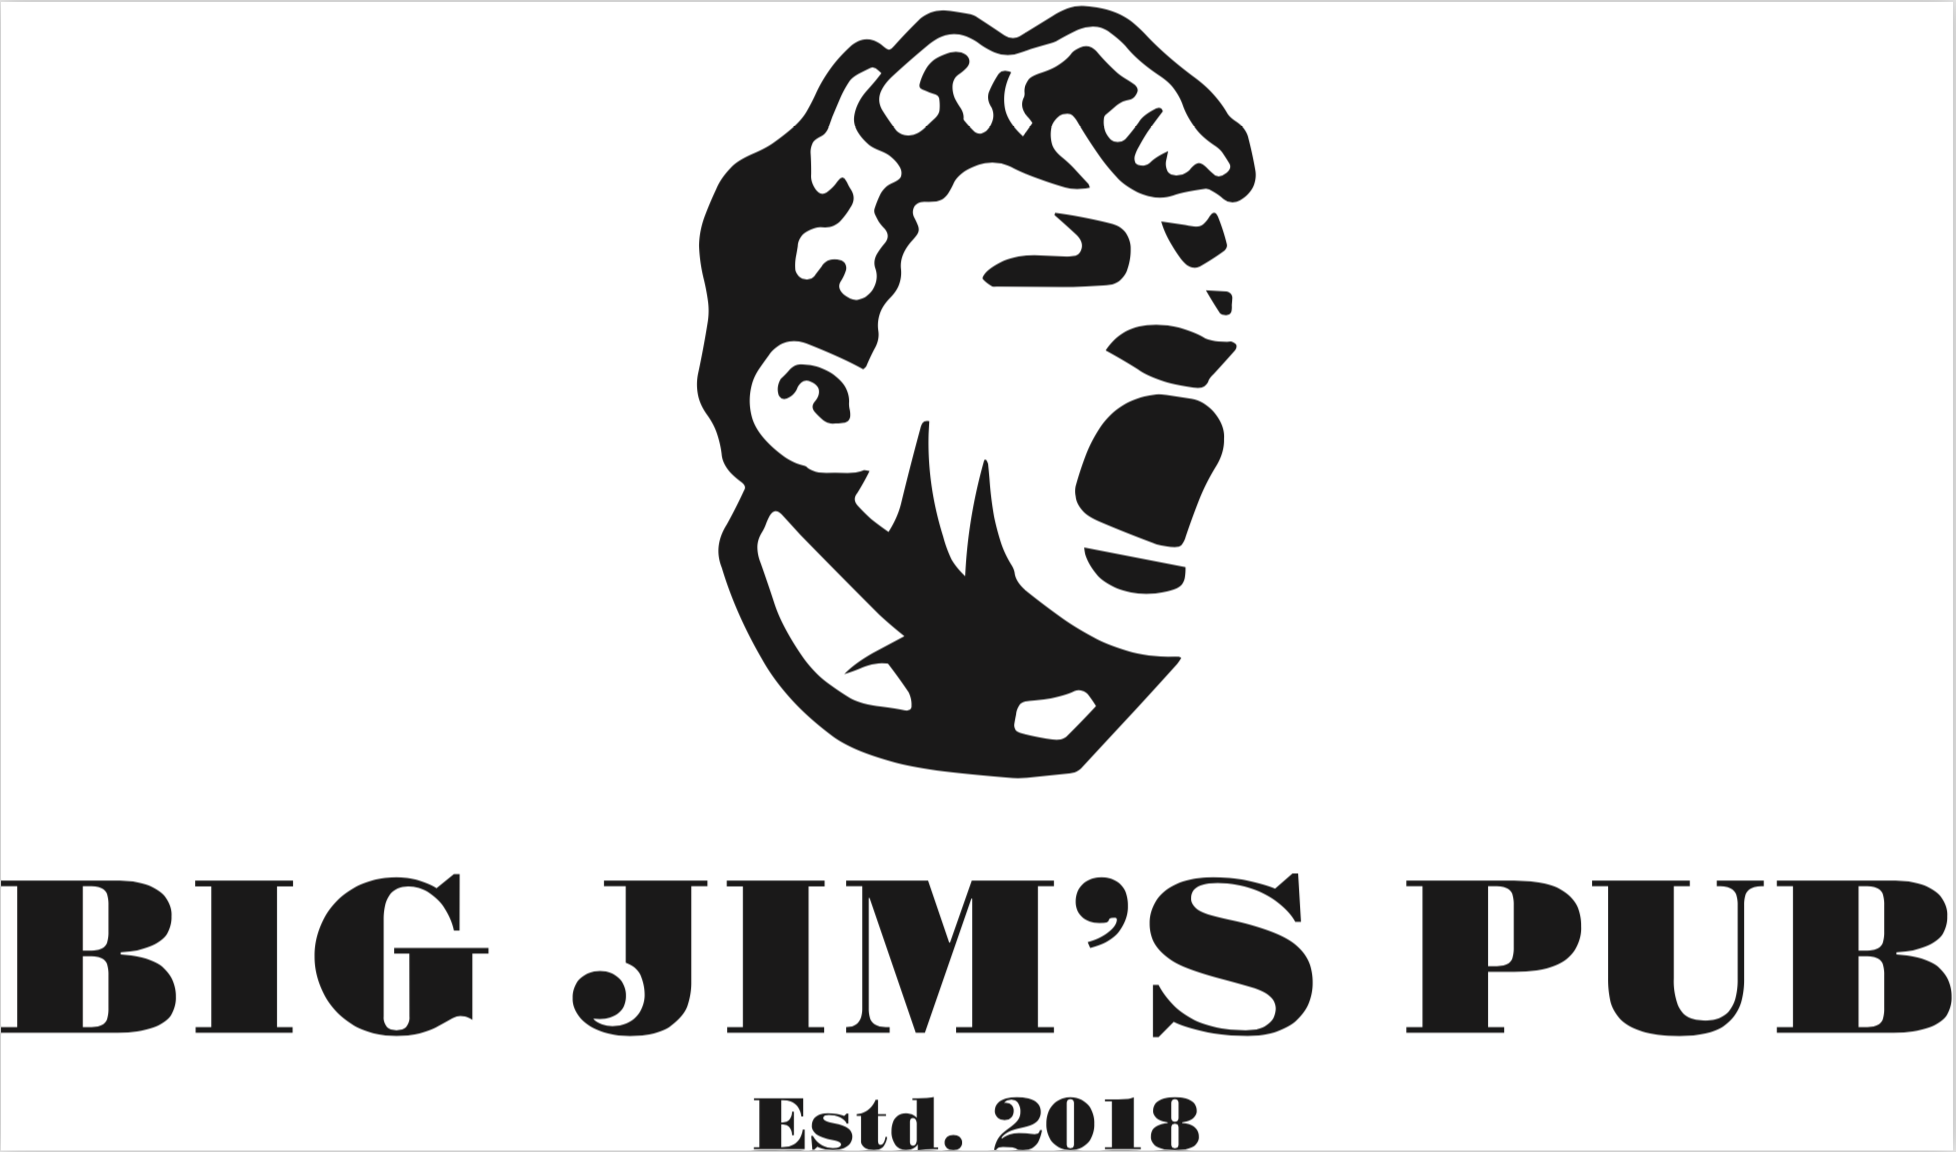 Jims pub